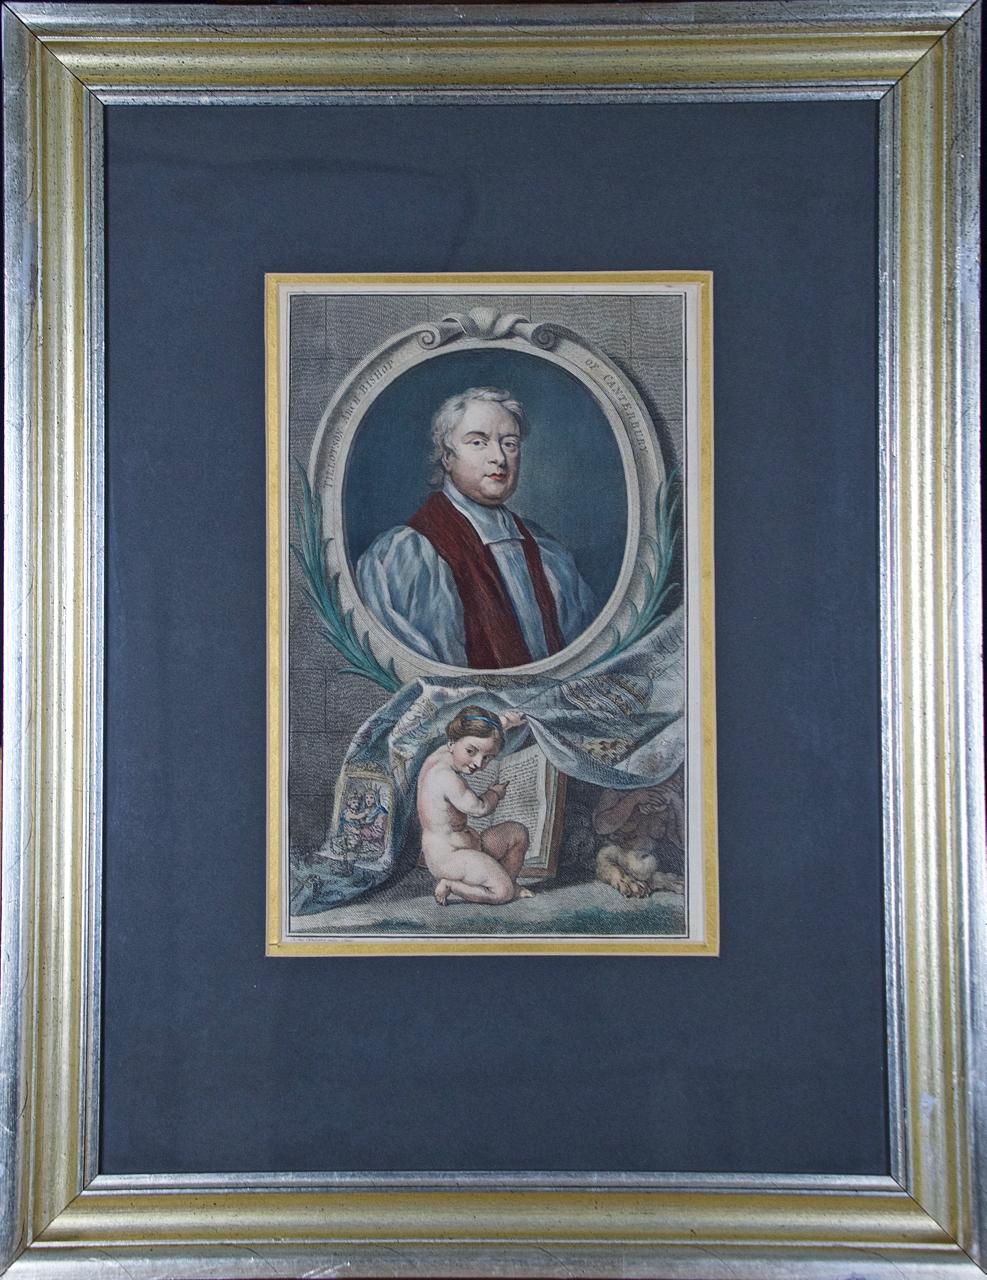 (After) Sir Godfrey Kneller Portrait Print – Tillotson, Erzbischof von Canterbury: Ein handkoloriertes Porträt aus dem 18. Jahrhundert von Kneller